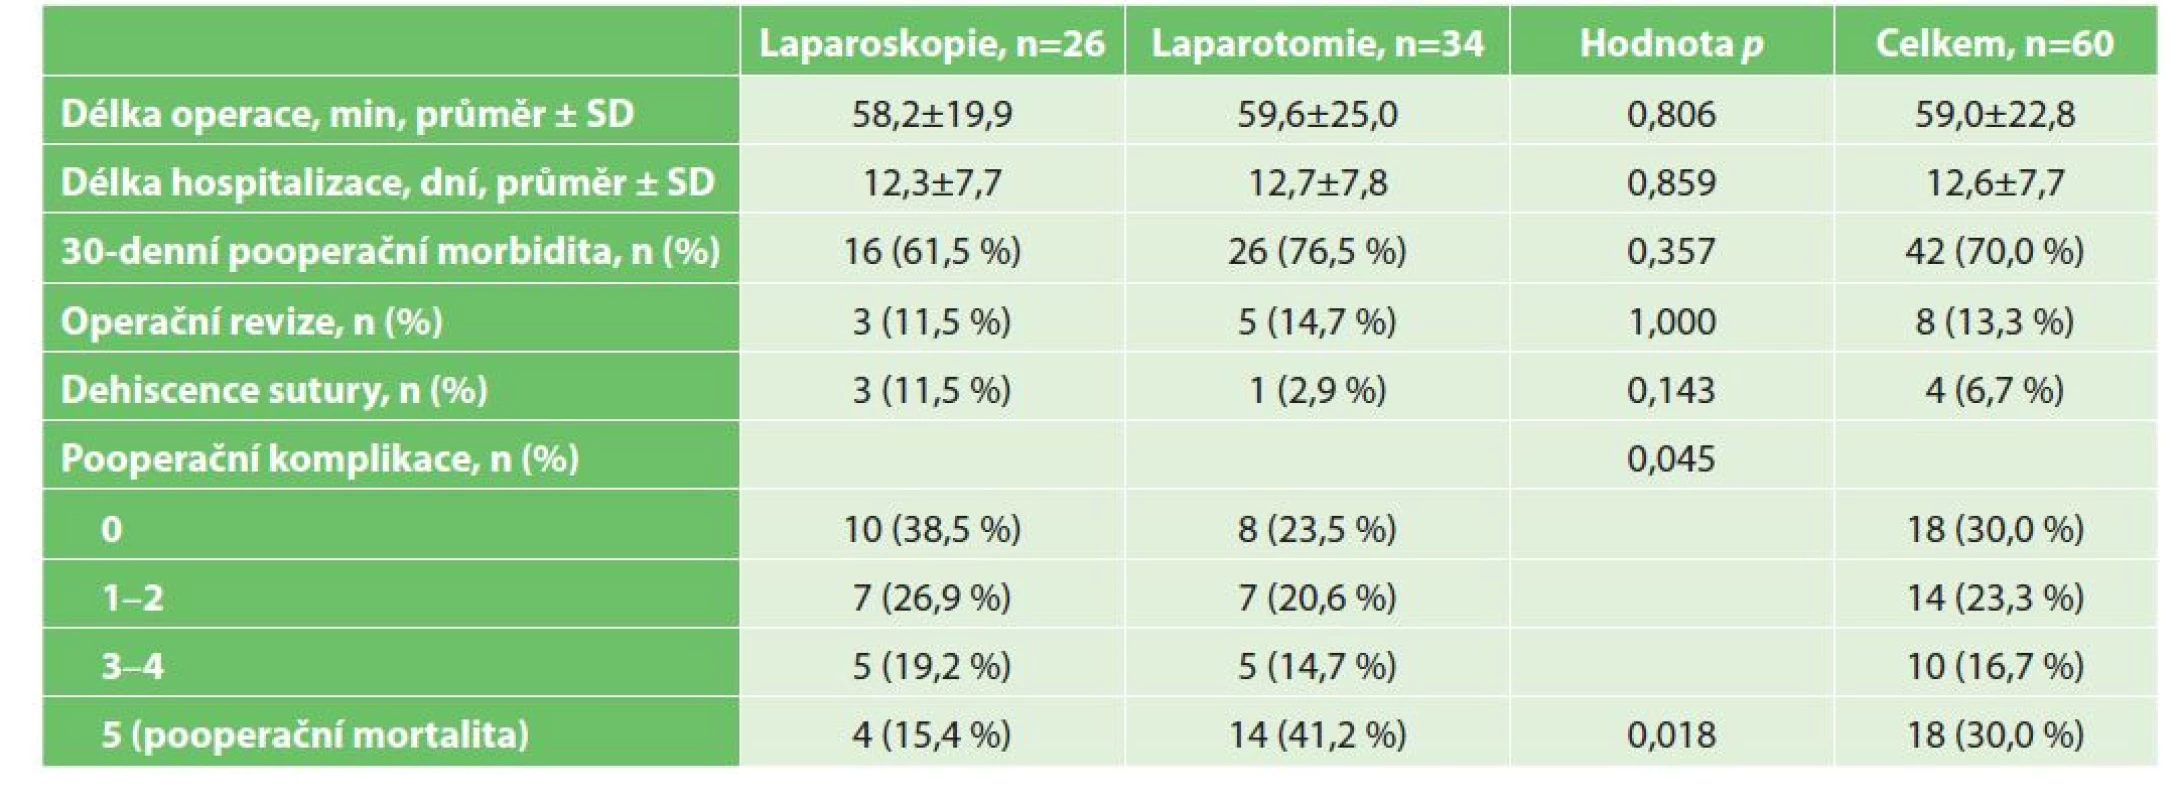 Perioperační a pooperační výsledky pacientů ve studii<br>
Tab. 3: Intraoperative and postoperative outcomes of study patients